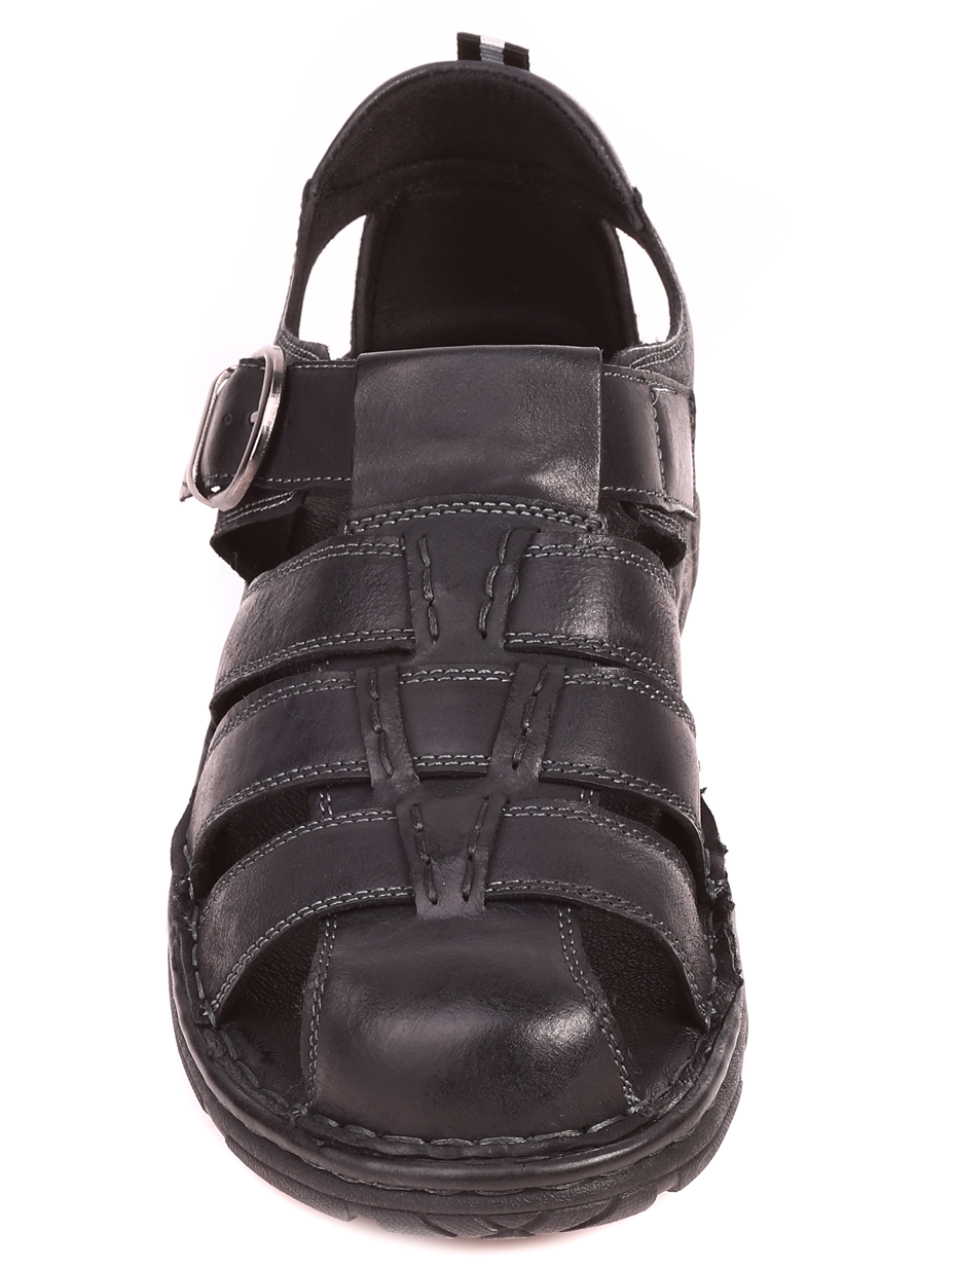 Ежедневни мъжки сандали от естествена кожа 7W-21240 black-20261